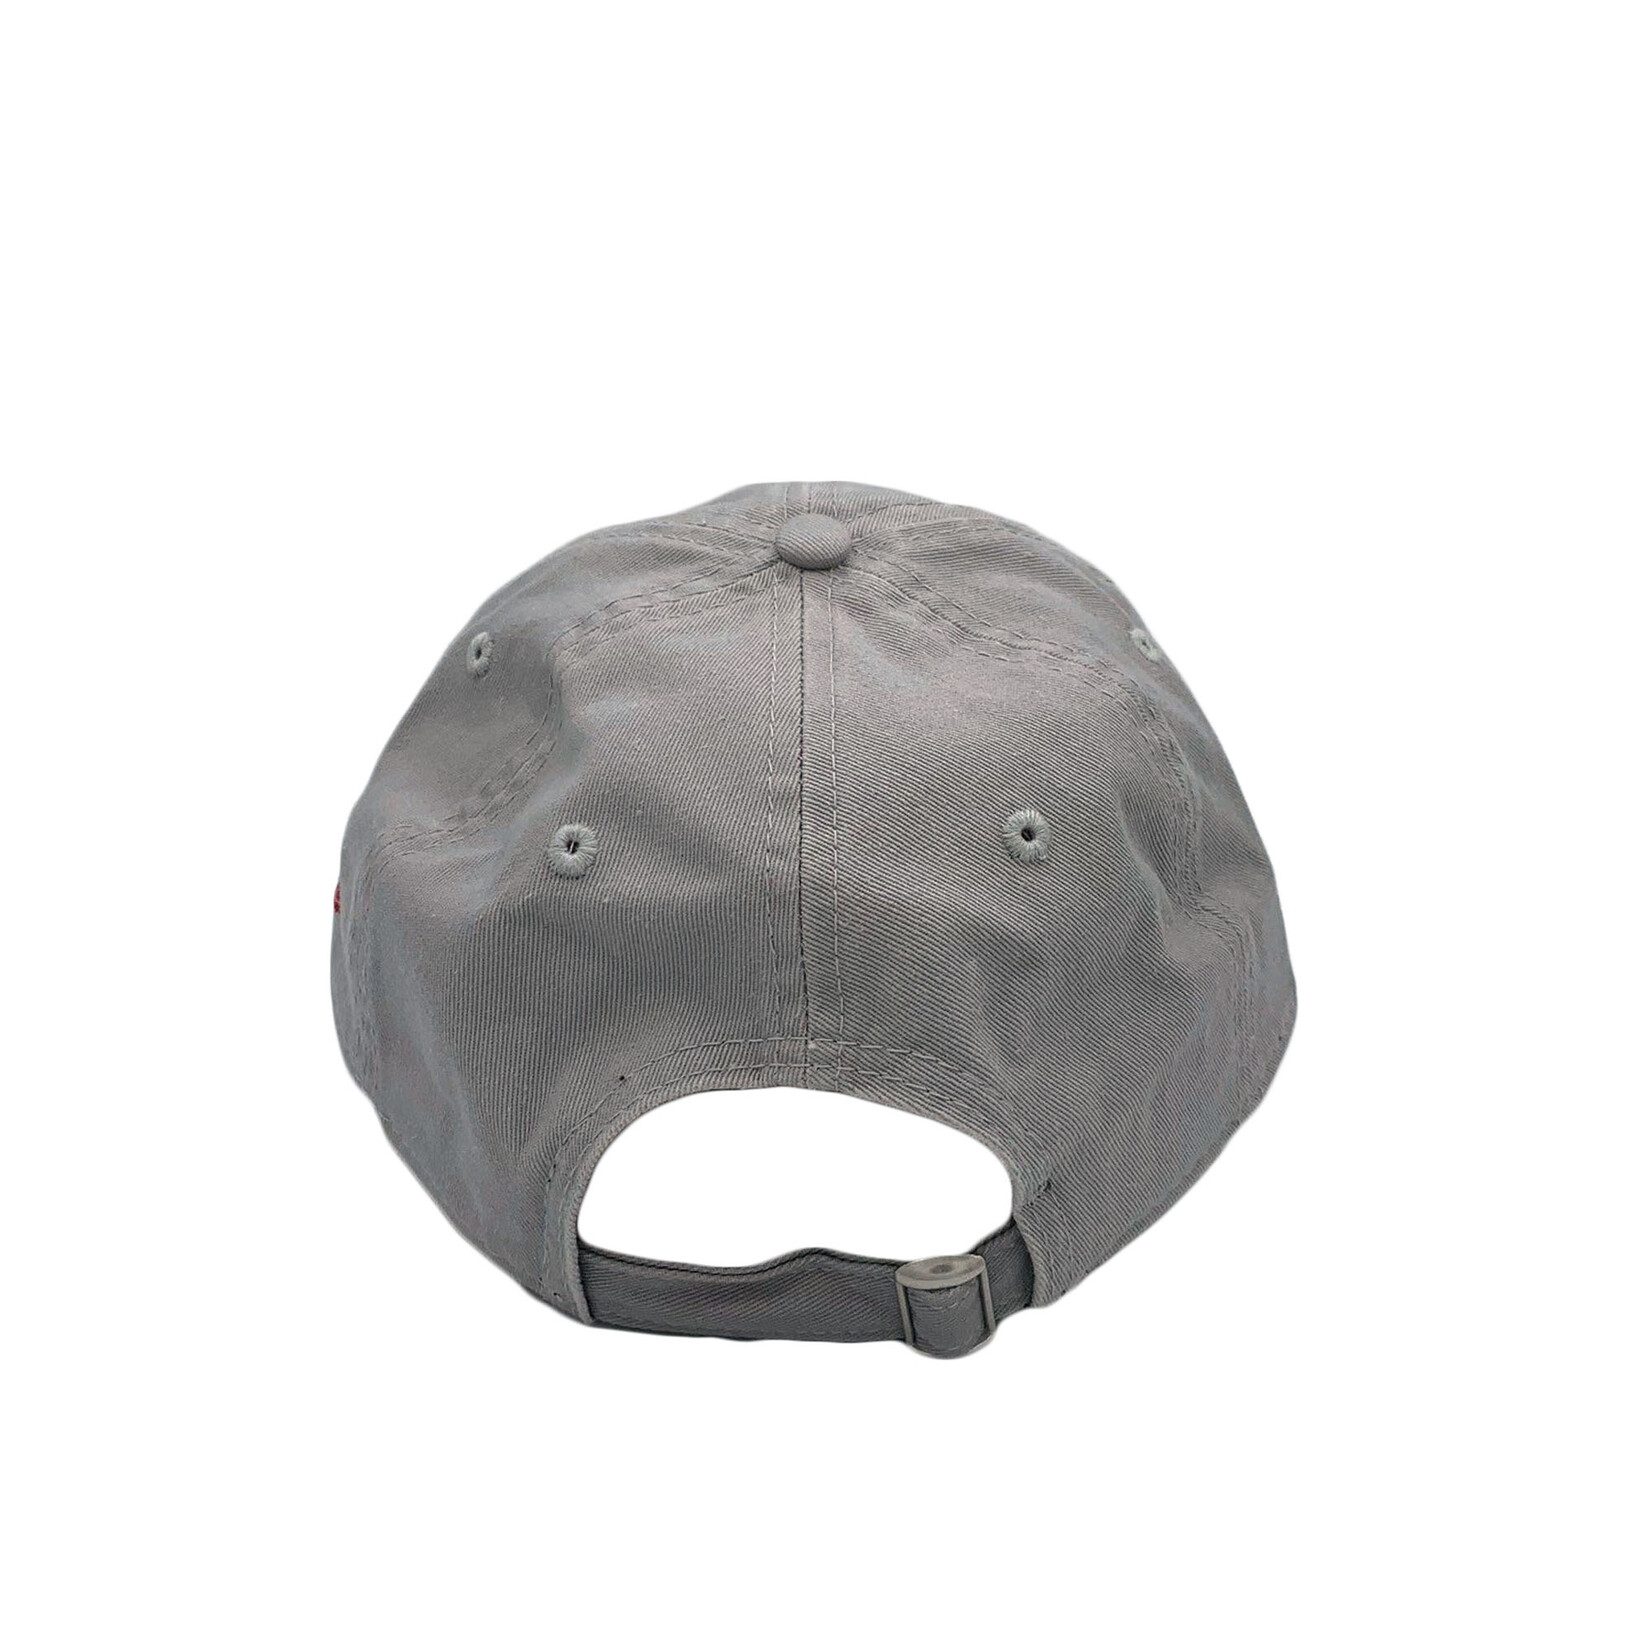 CFL CFL Grey 920 Hat